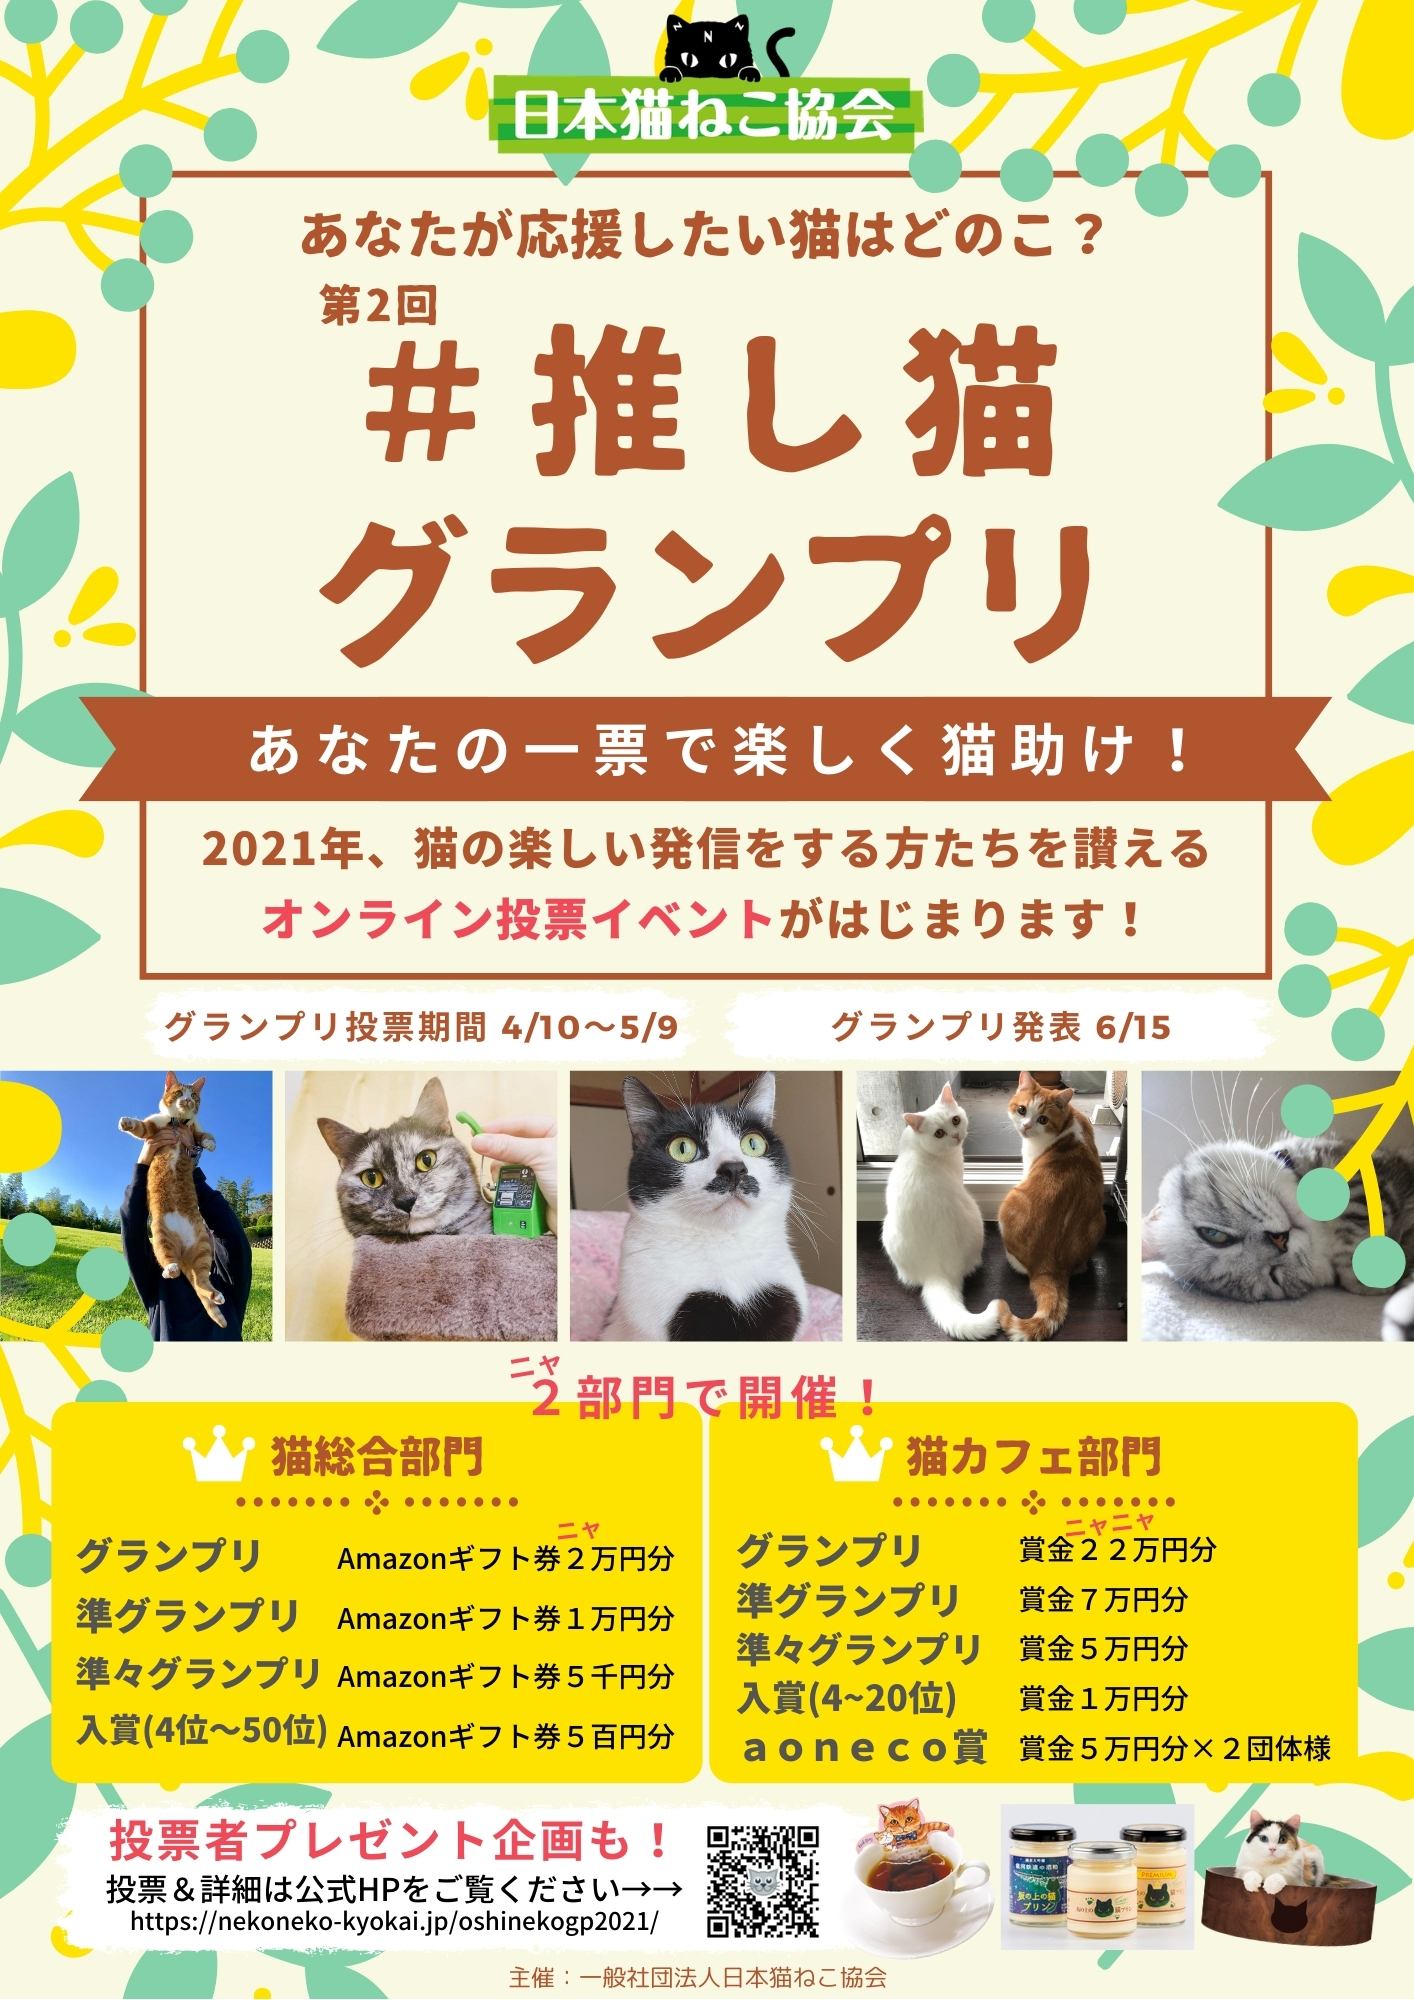 保護猫の啓蒙活動を目的とした参加型オンラインイベント 推し猫グランプリ21開催のお知らせ 一般社団法人日本猫ねこ協会のプレスリリース